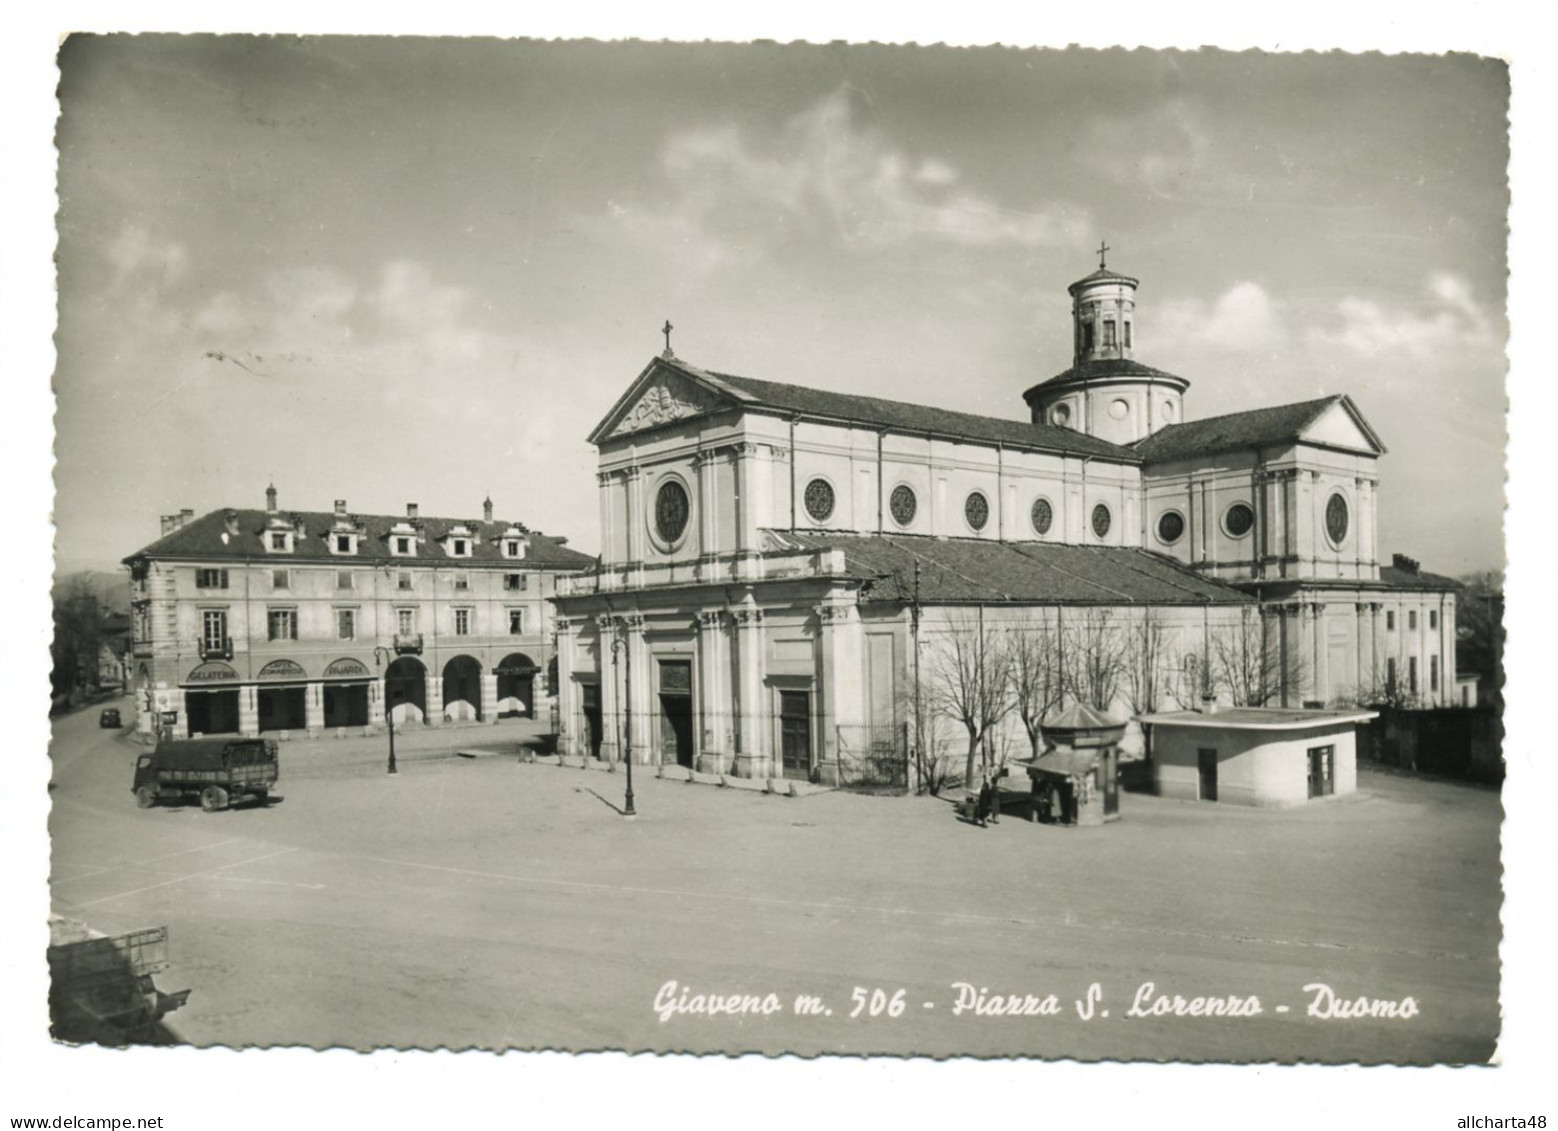 D2191] GIAVENO Torino PIAZZA SAN LORENZO - DUOMO Camion Viaggiata 1958 - Panoramische Zichten, Meerdere Zichten